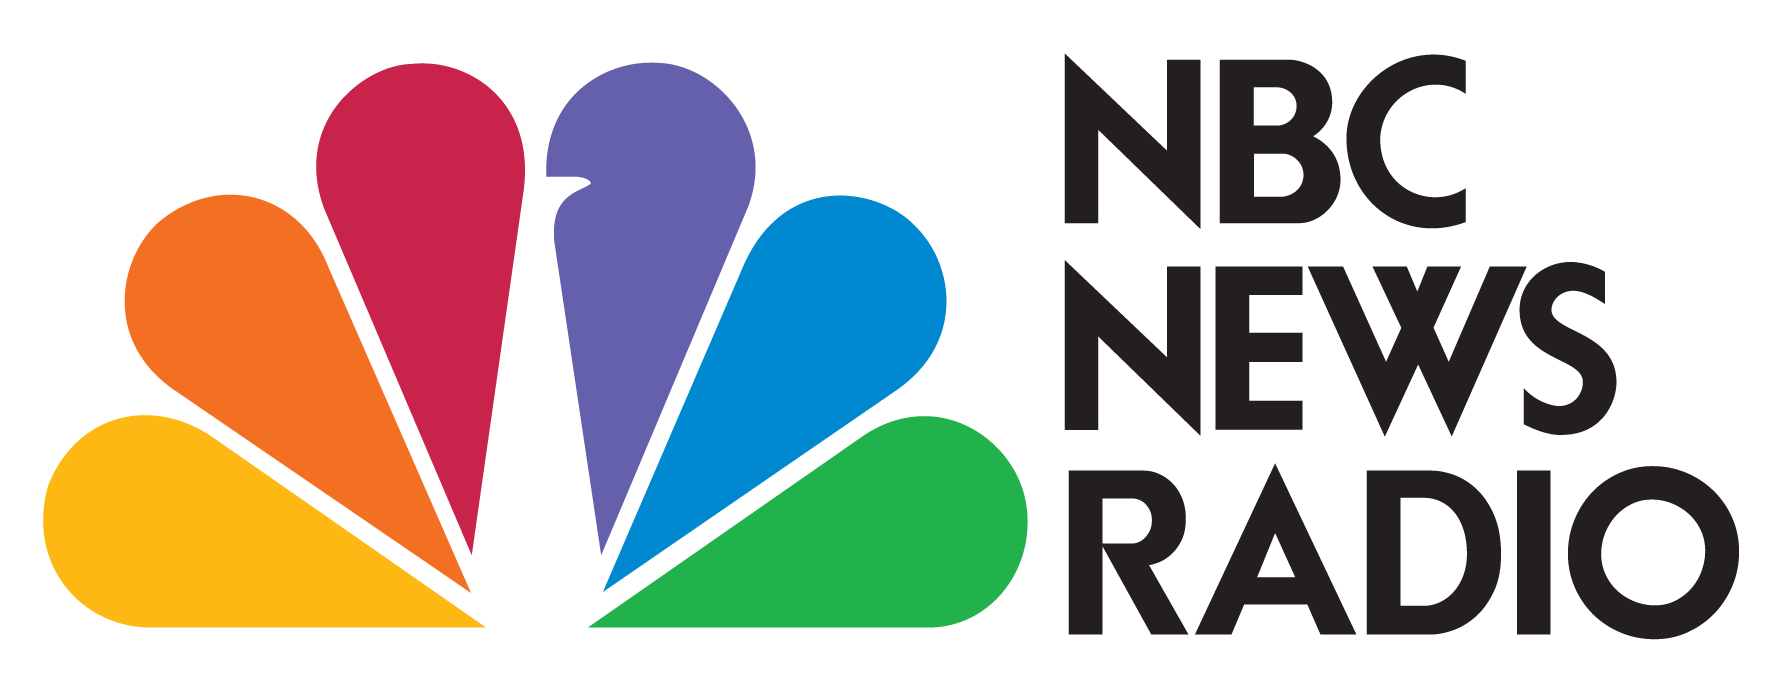 20120215074602!NBC_logo_2011